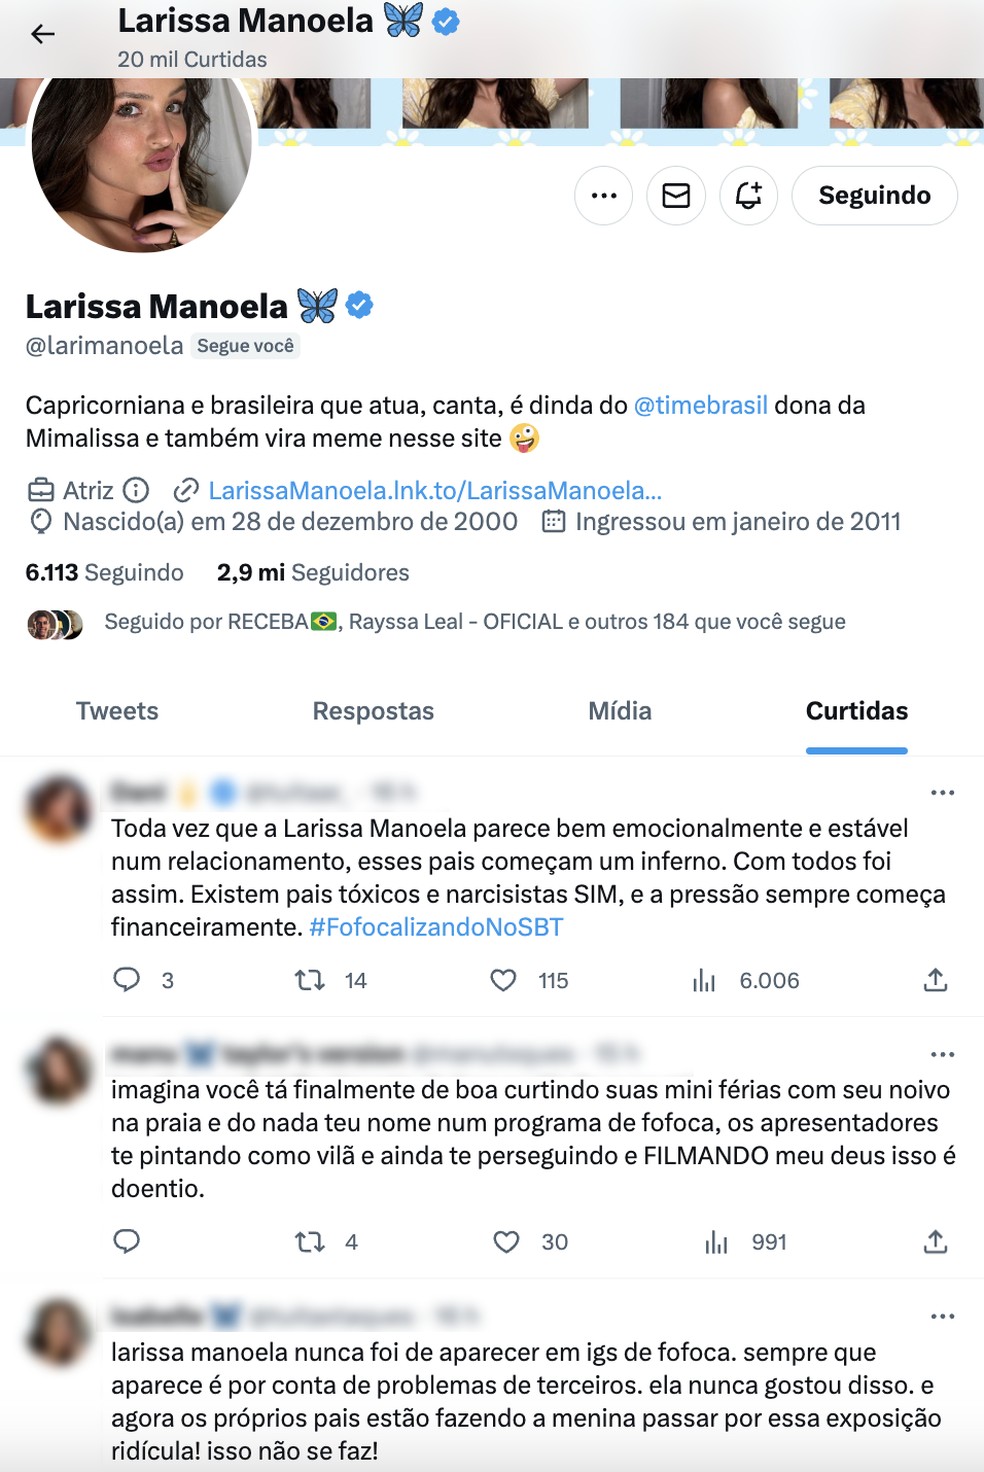 Larissa Manoela curte posts que falam sobre a sua polêmica com os pais — Foto: Reprodução / Twitter